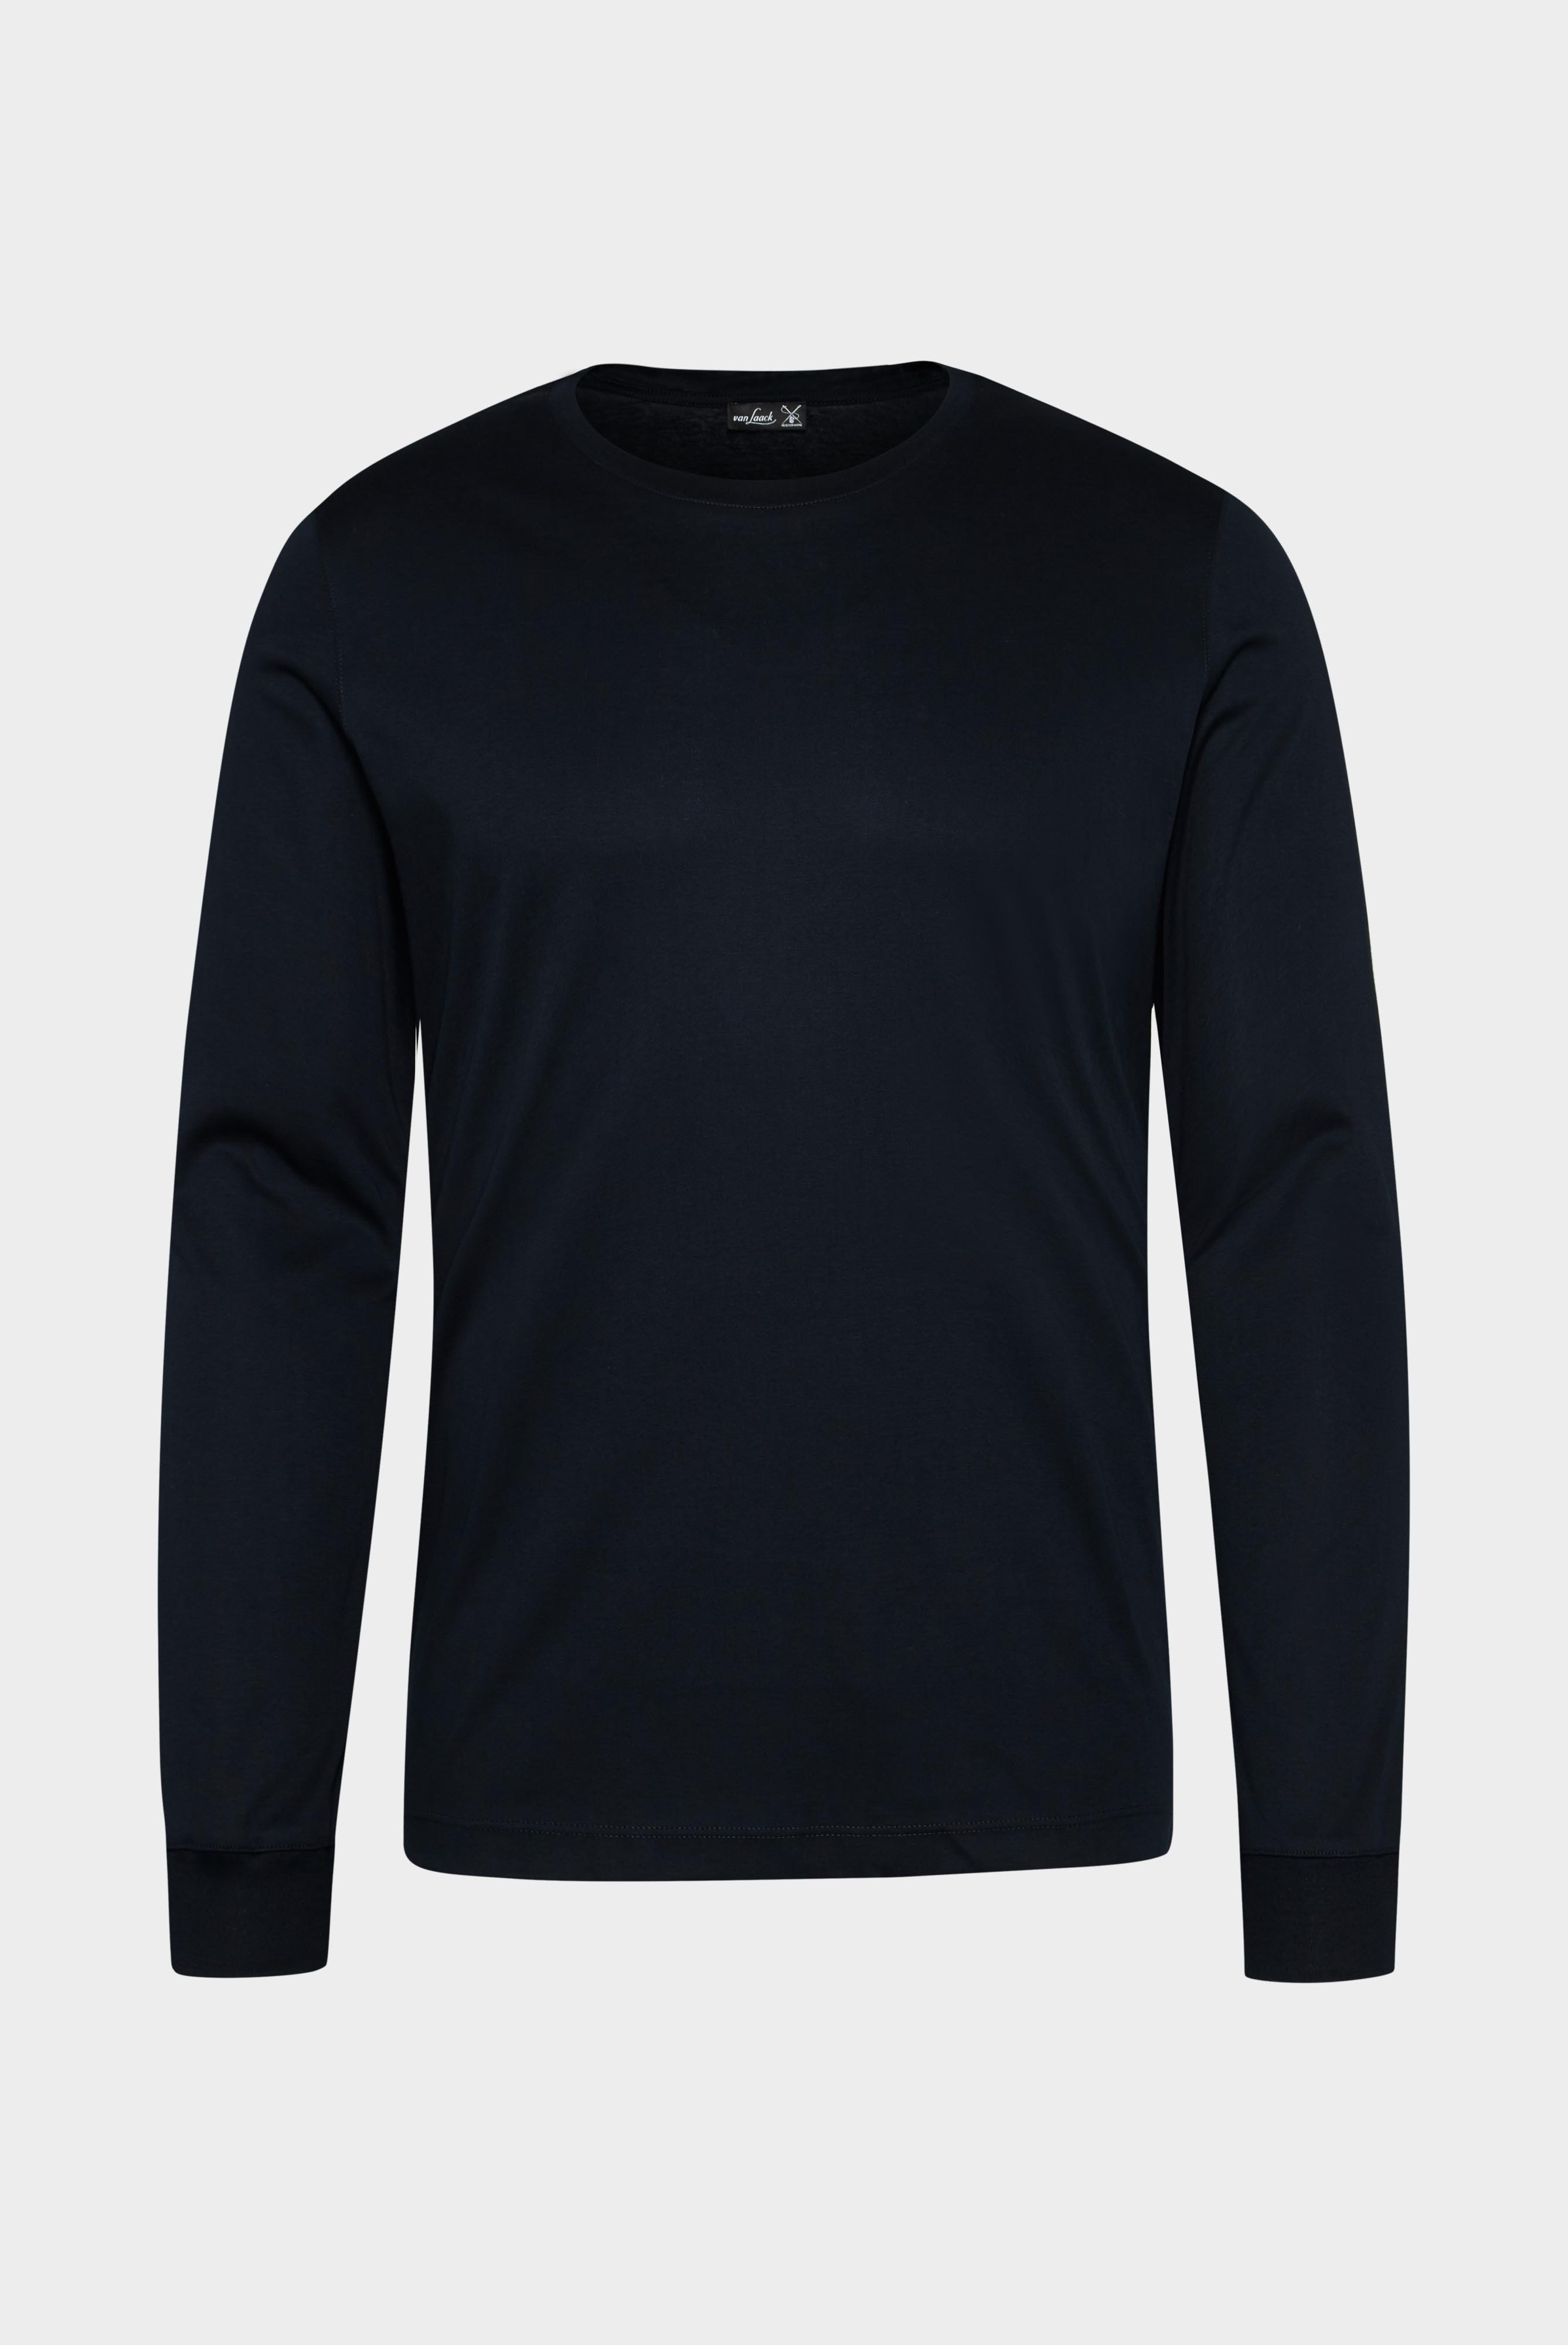 T-Shirts+Longsleeve Swiss Cotton Jersey Crew Neck T-Shirt+20.1718.UX.180031.790.XL